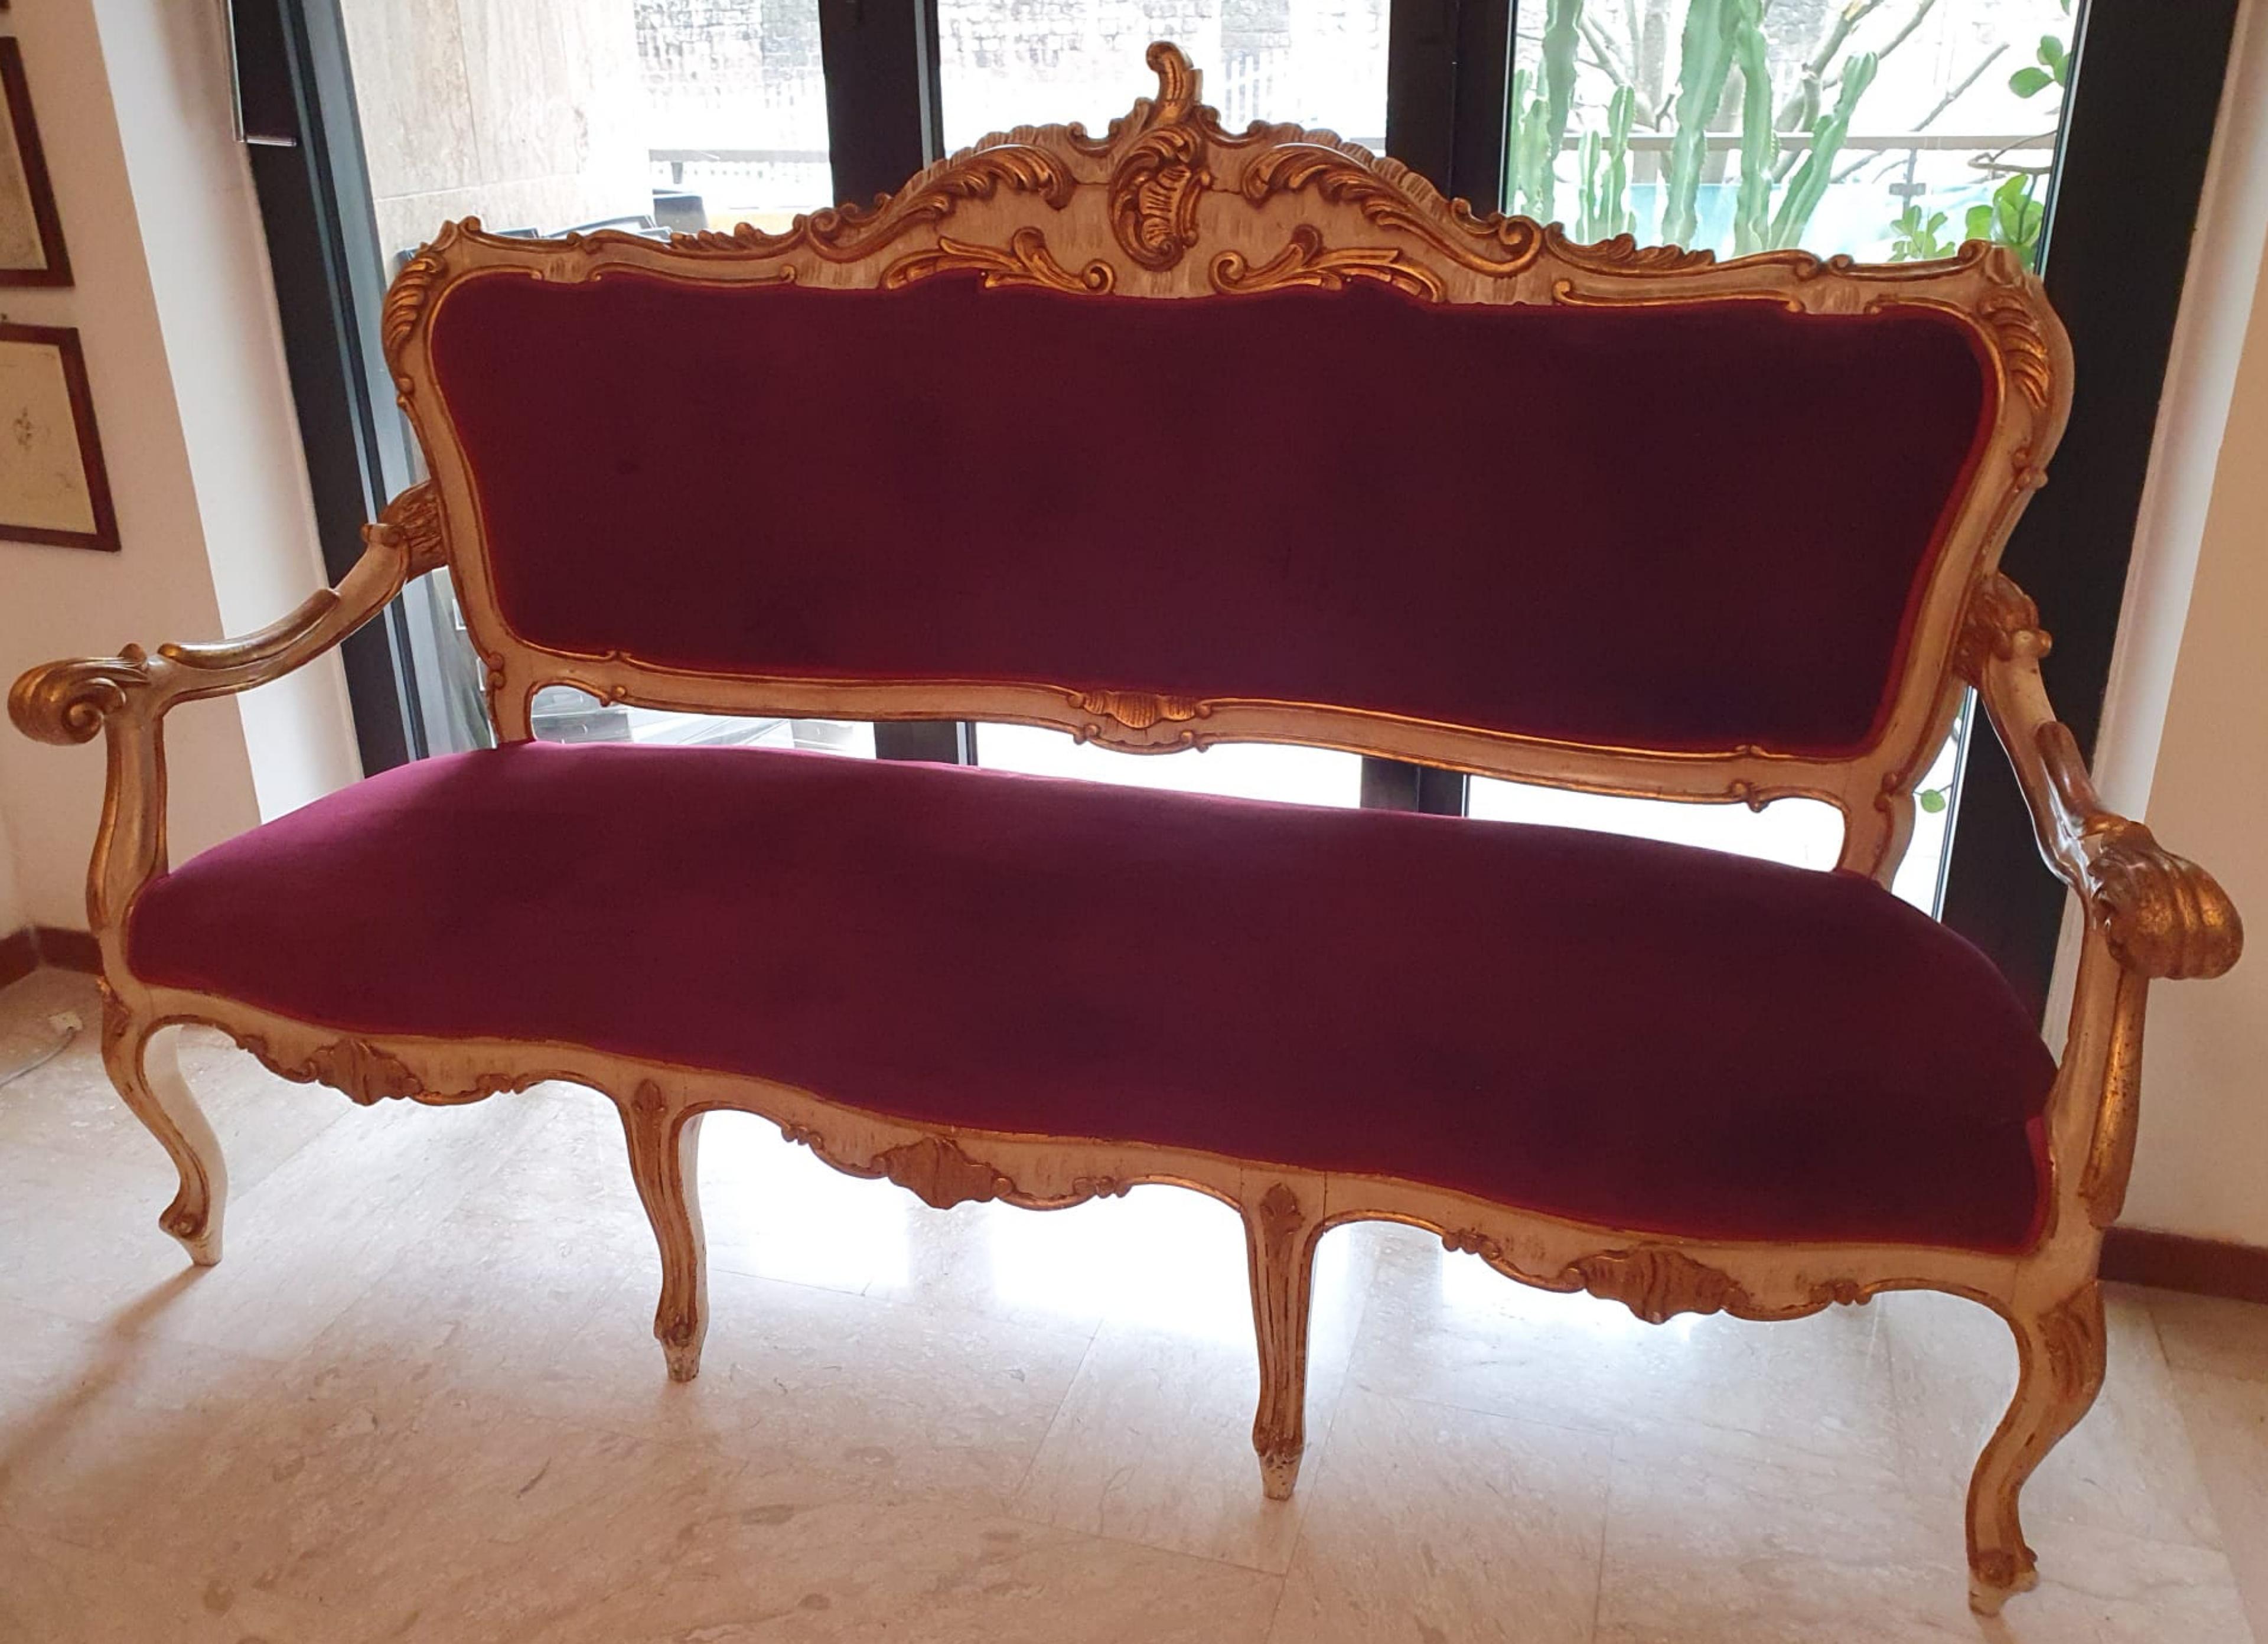 Canapé français de style Louis XVI fin 19ème siècle
Totalement restauré
Longueur : 171 cm
siège : 0,63cm
hauteur : 121cm